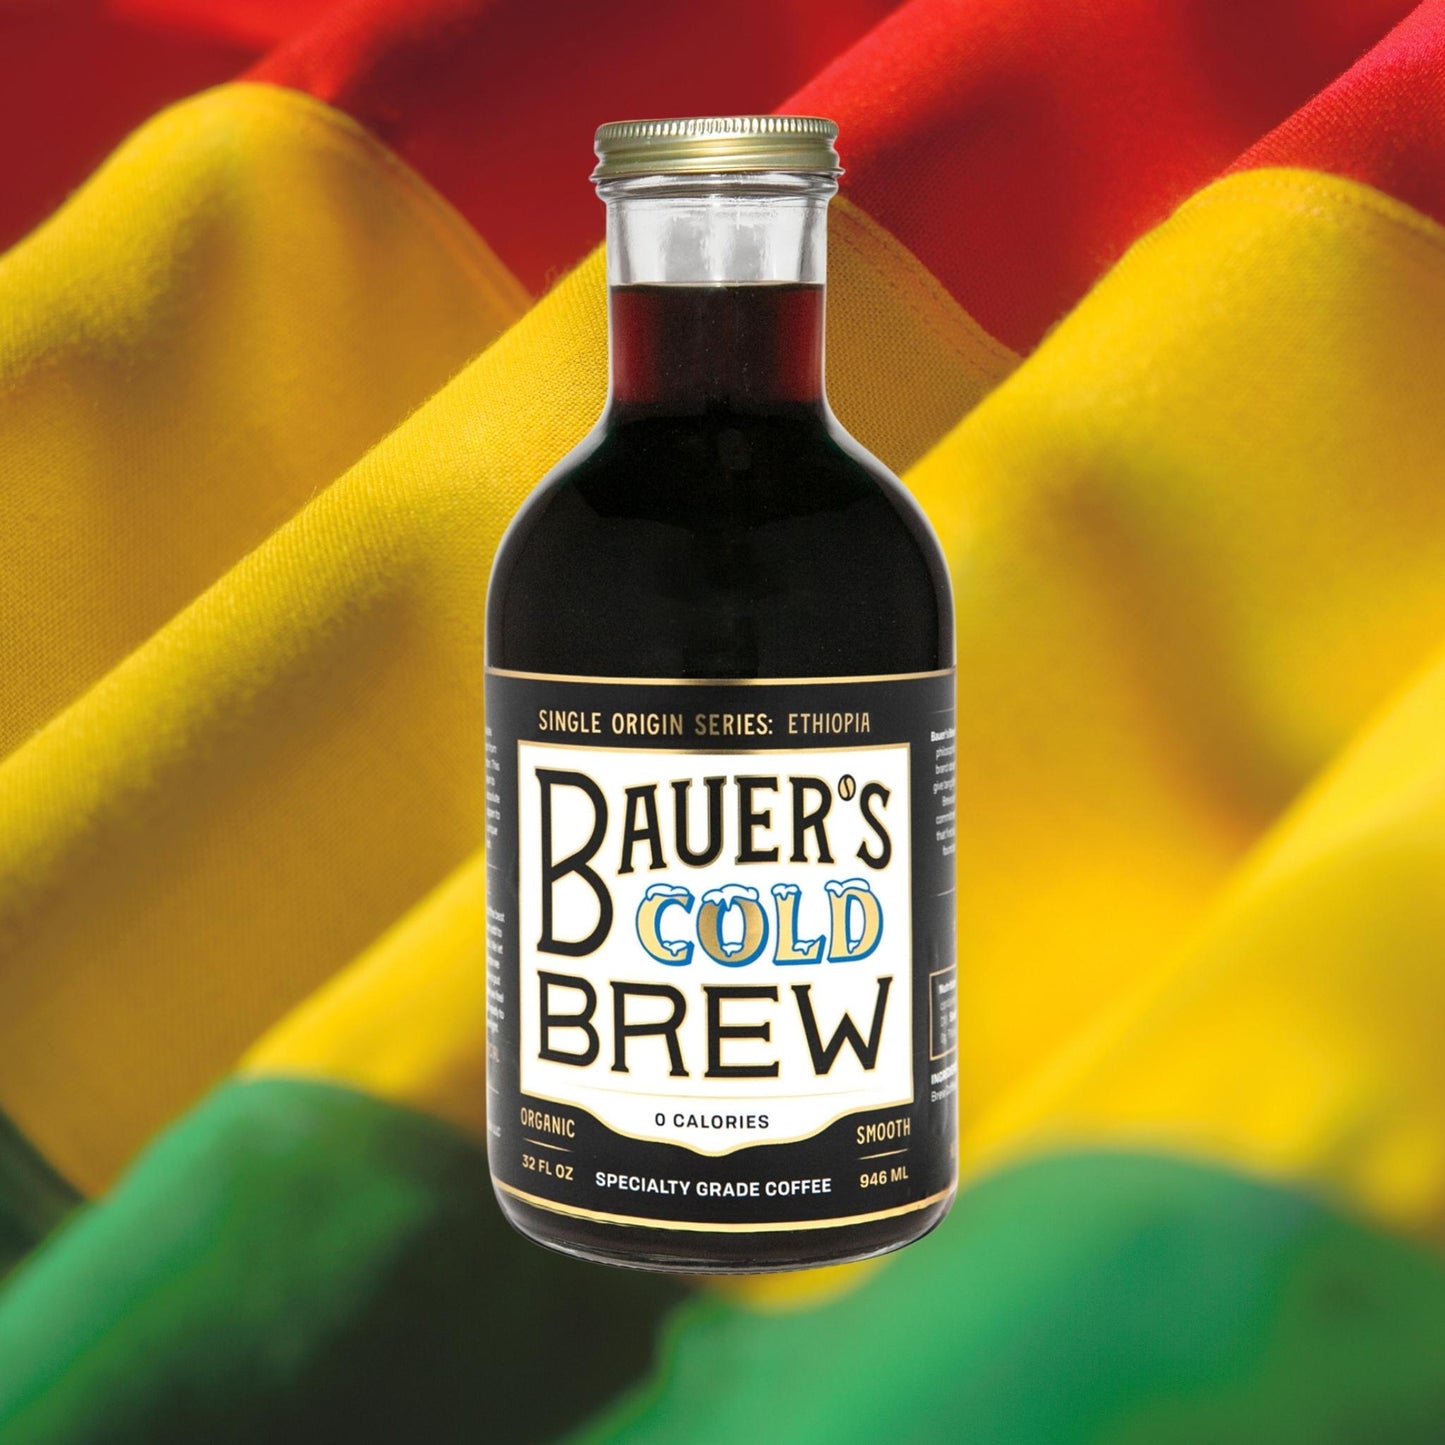 ETHIOPIA - Bauer's Brew